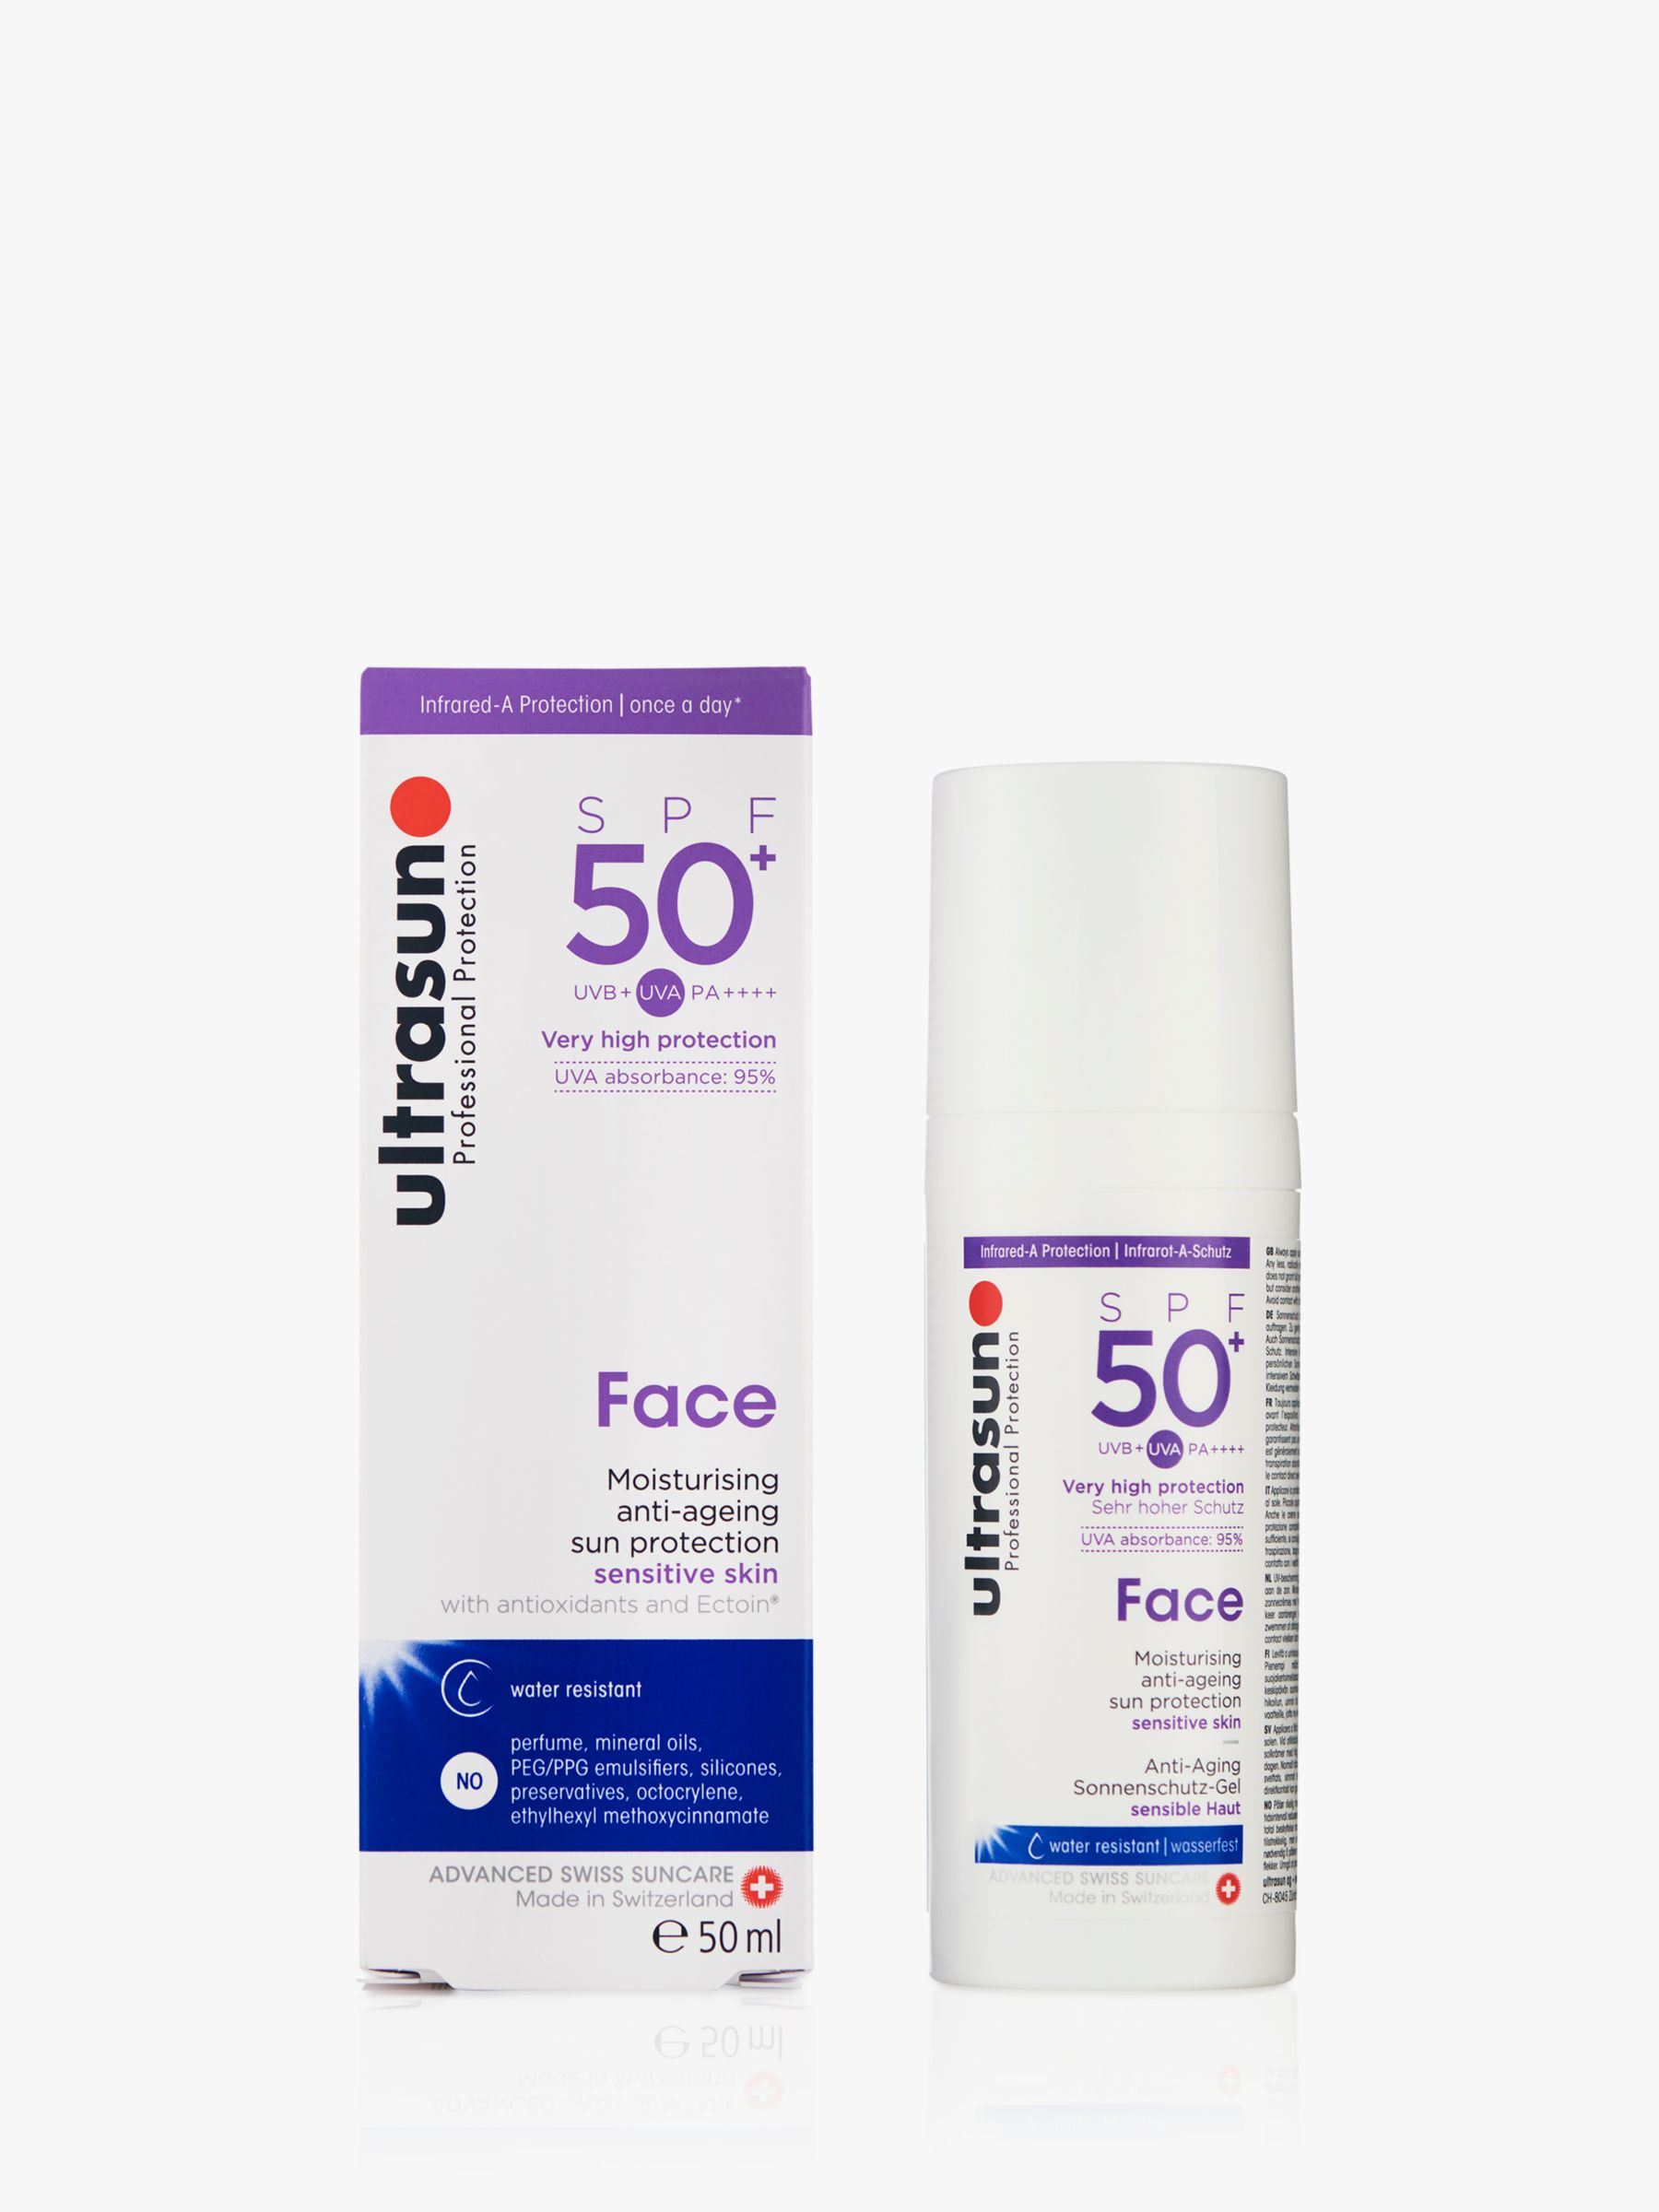 Ultrasun Ultrasun SPF 50+ Anti-Ageing Ultra Sensitive Facial Sun Cream, 50ml